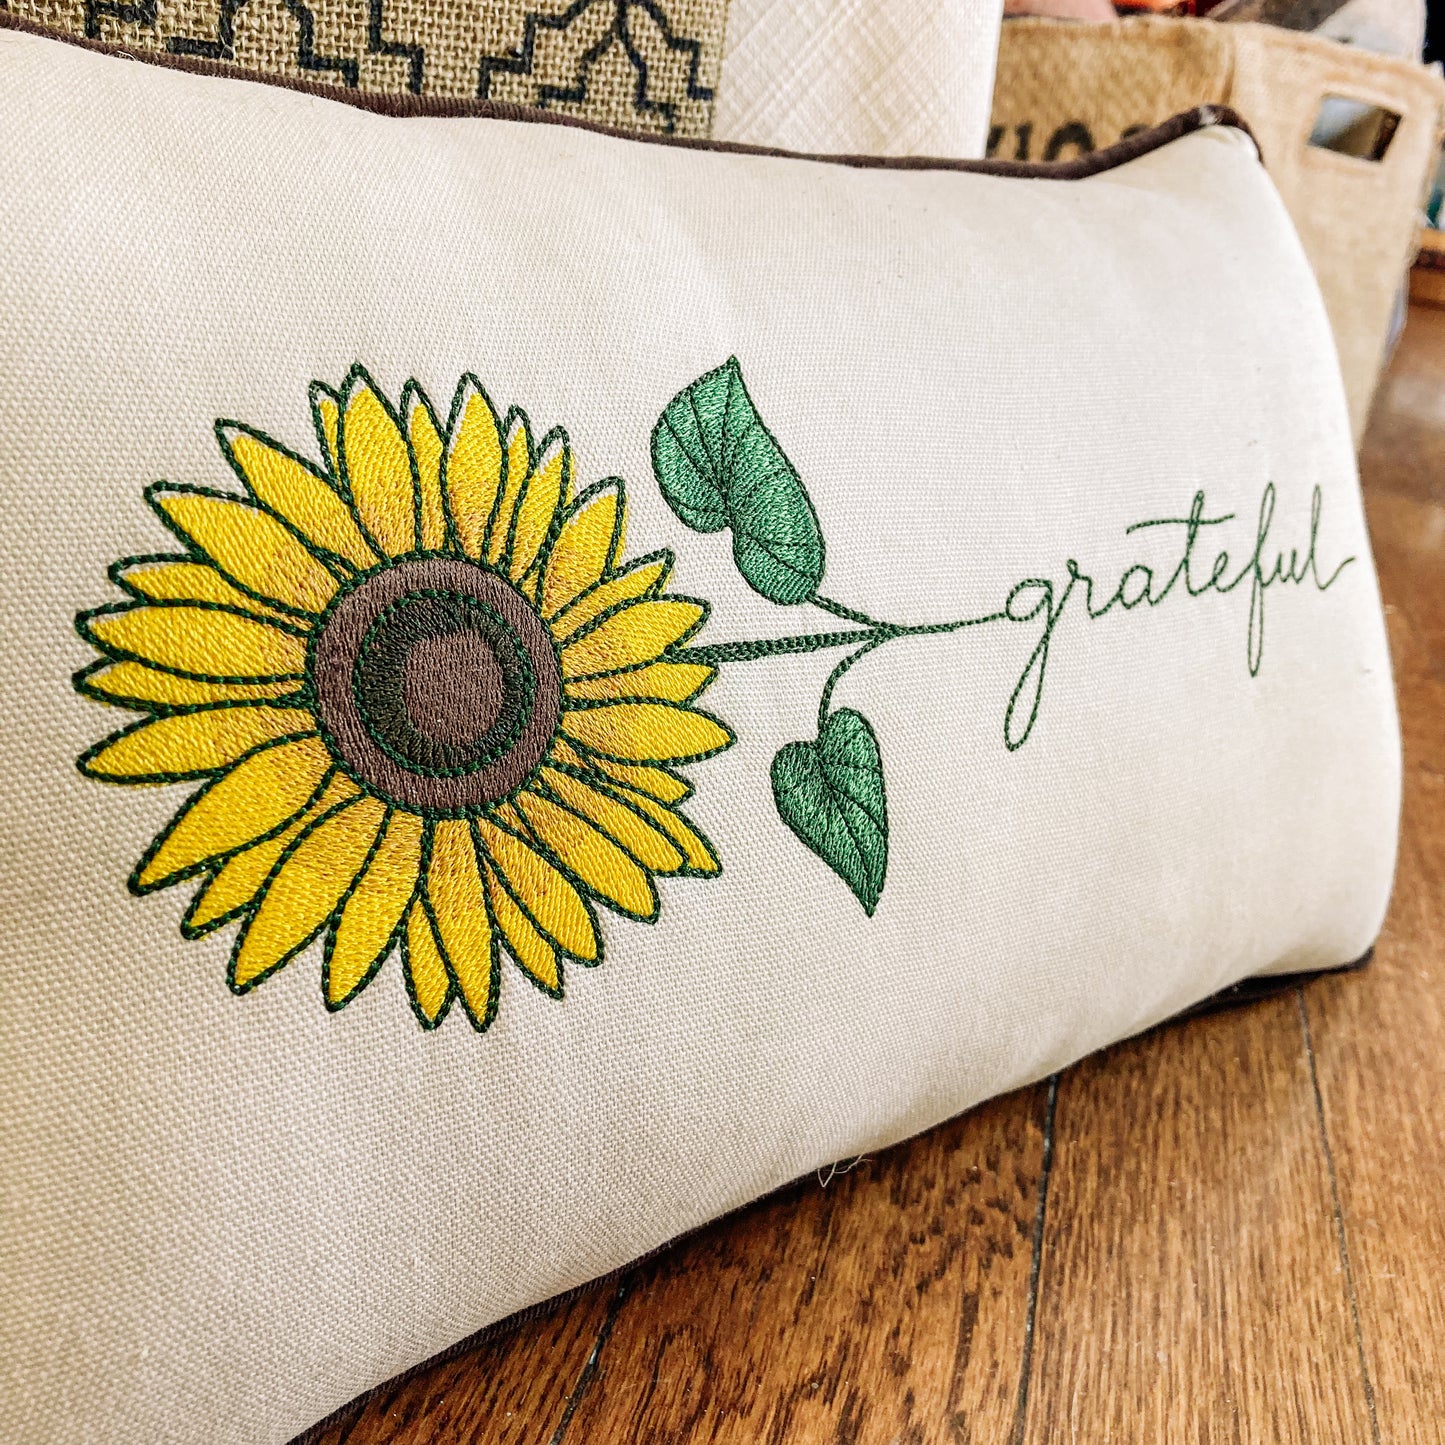 Pillow-Sunflower/Grateful